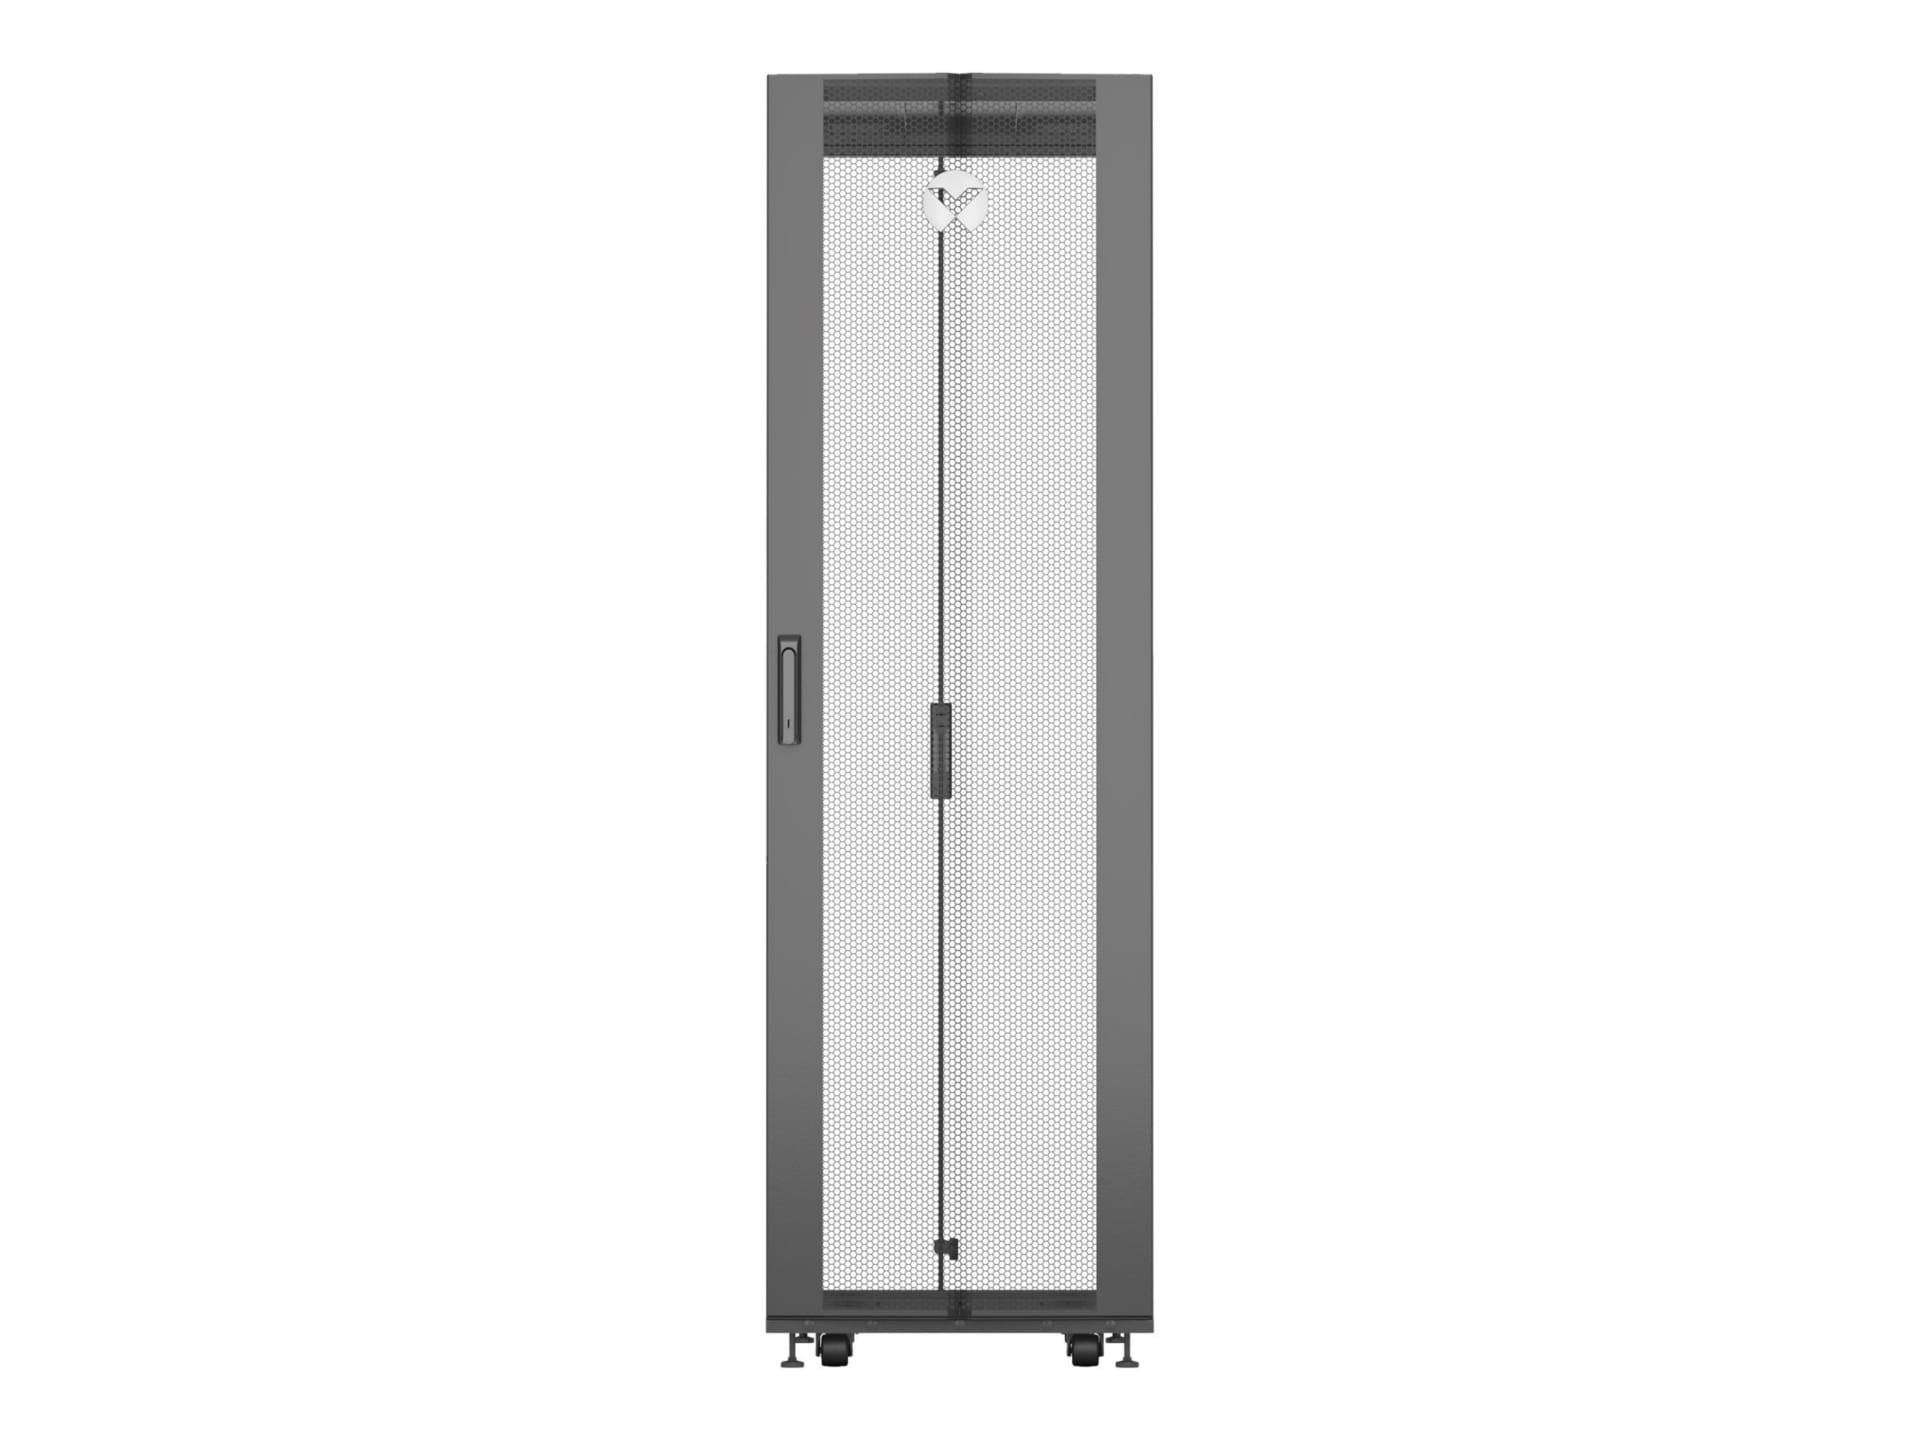 Vertiv VR Rack - 42U Server Rack Enclosure| 600x1100mm| 19-inch Cabinet